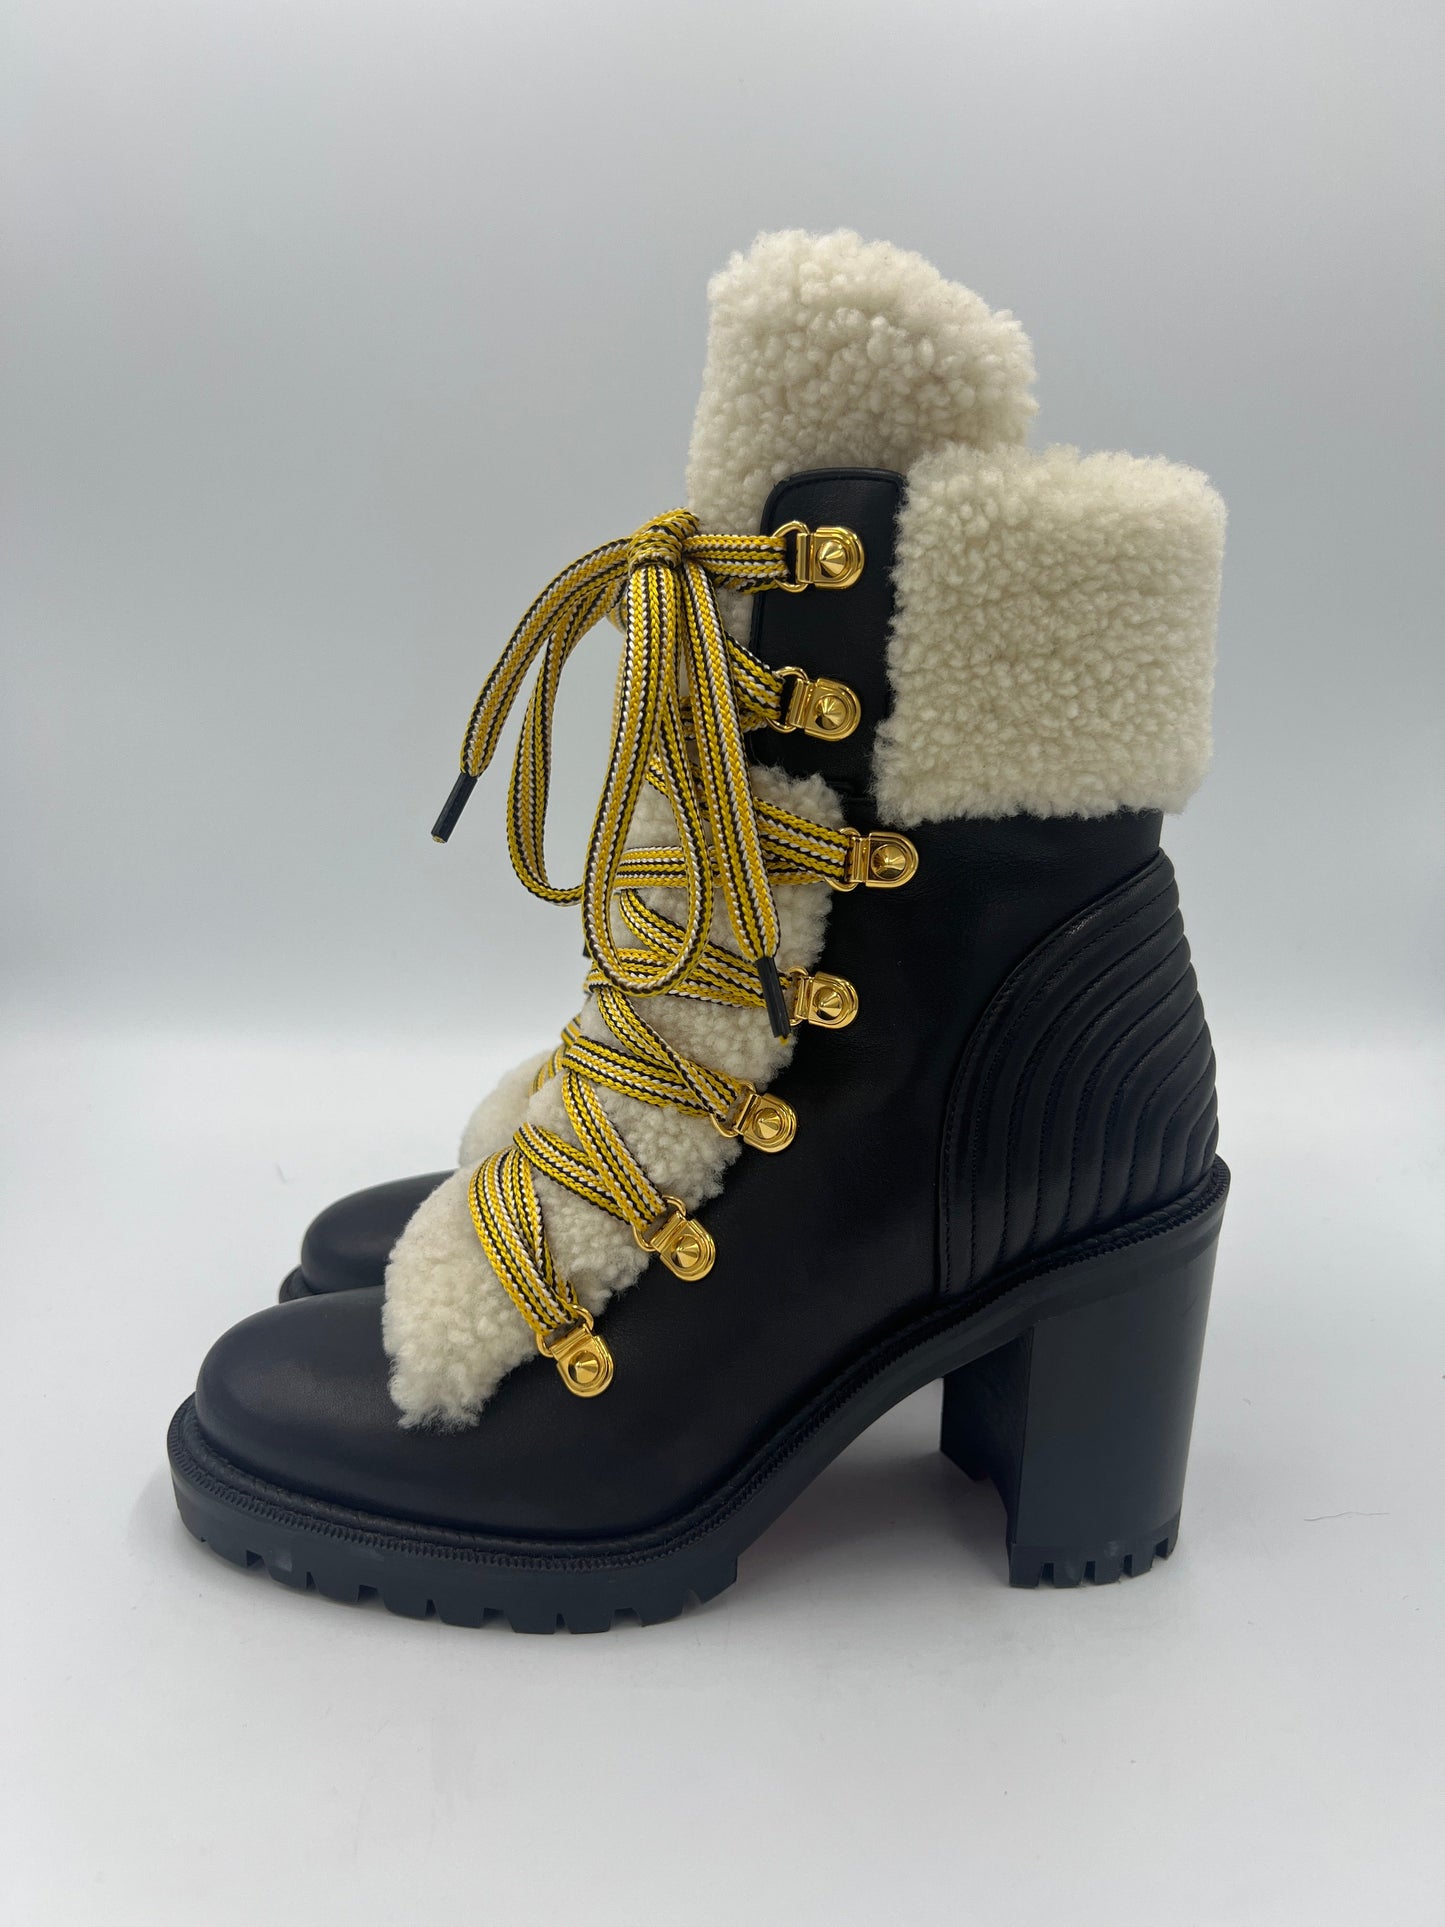 Christian Louboutin Calfskin Yeti Boots  Size: 6.5